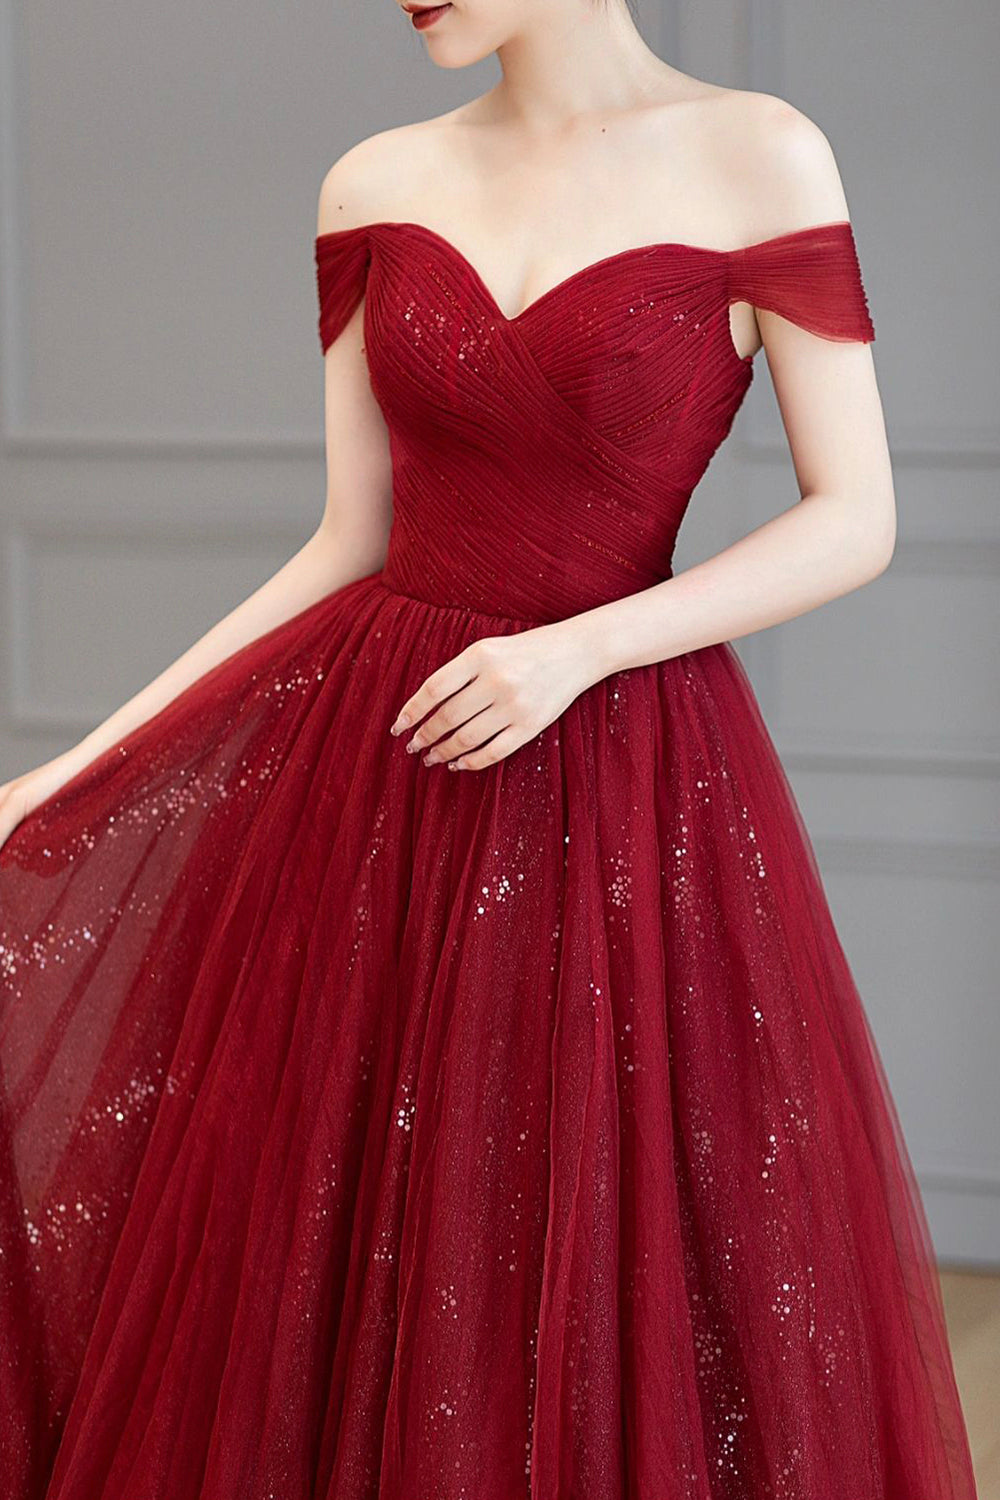 Burgundy Off the Shoulder Long Prom Dress, Elegant Tulle Formal Evening Dress